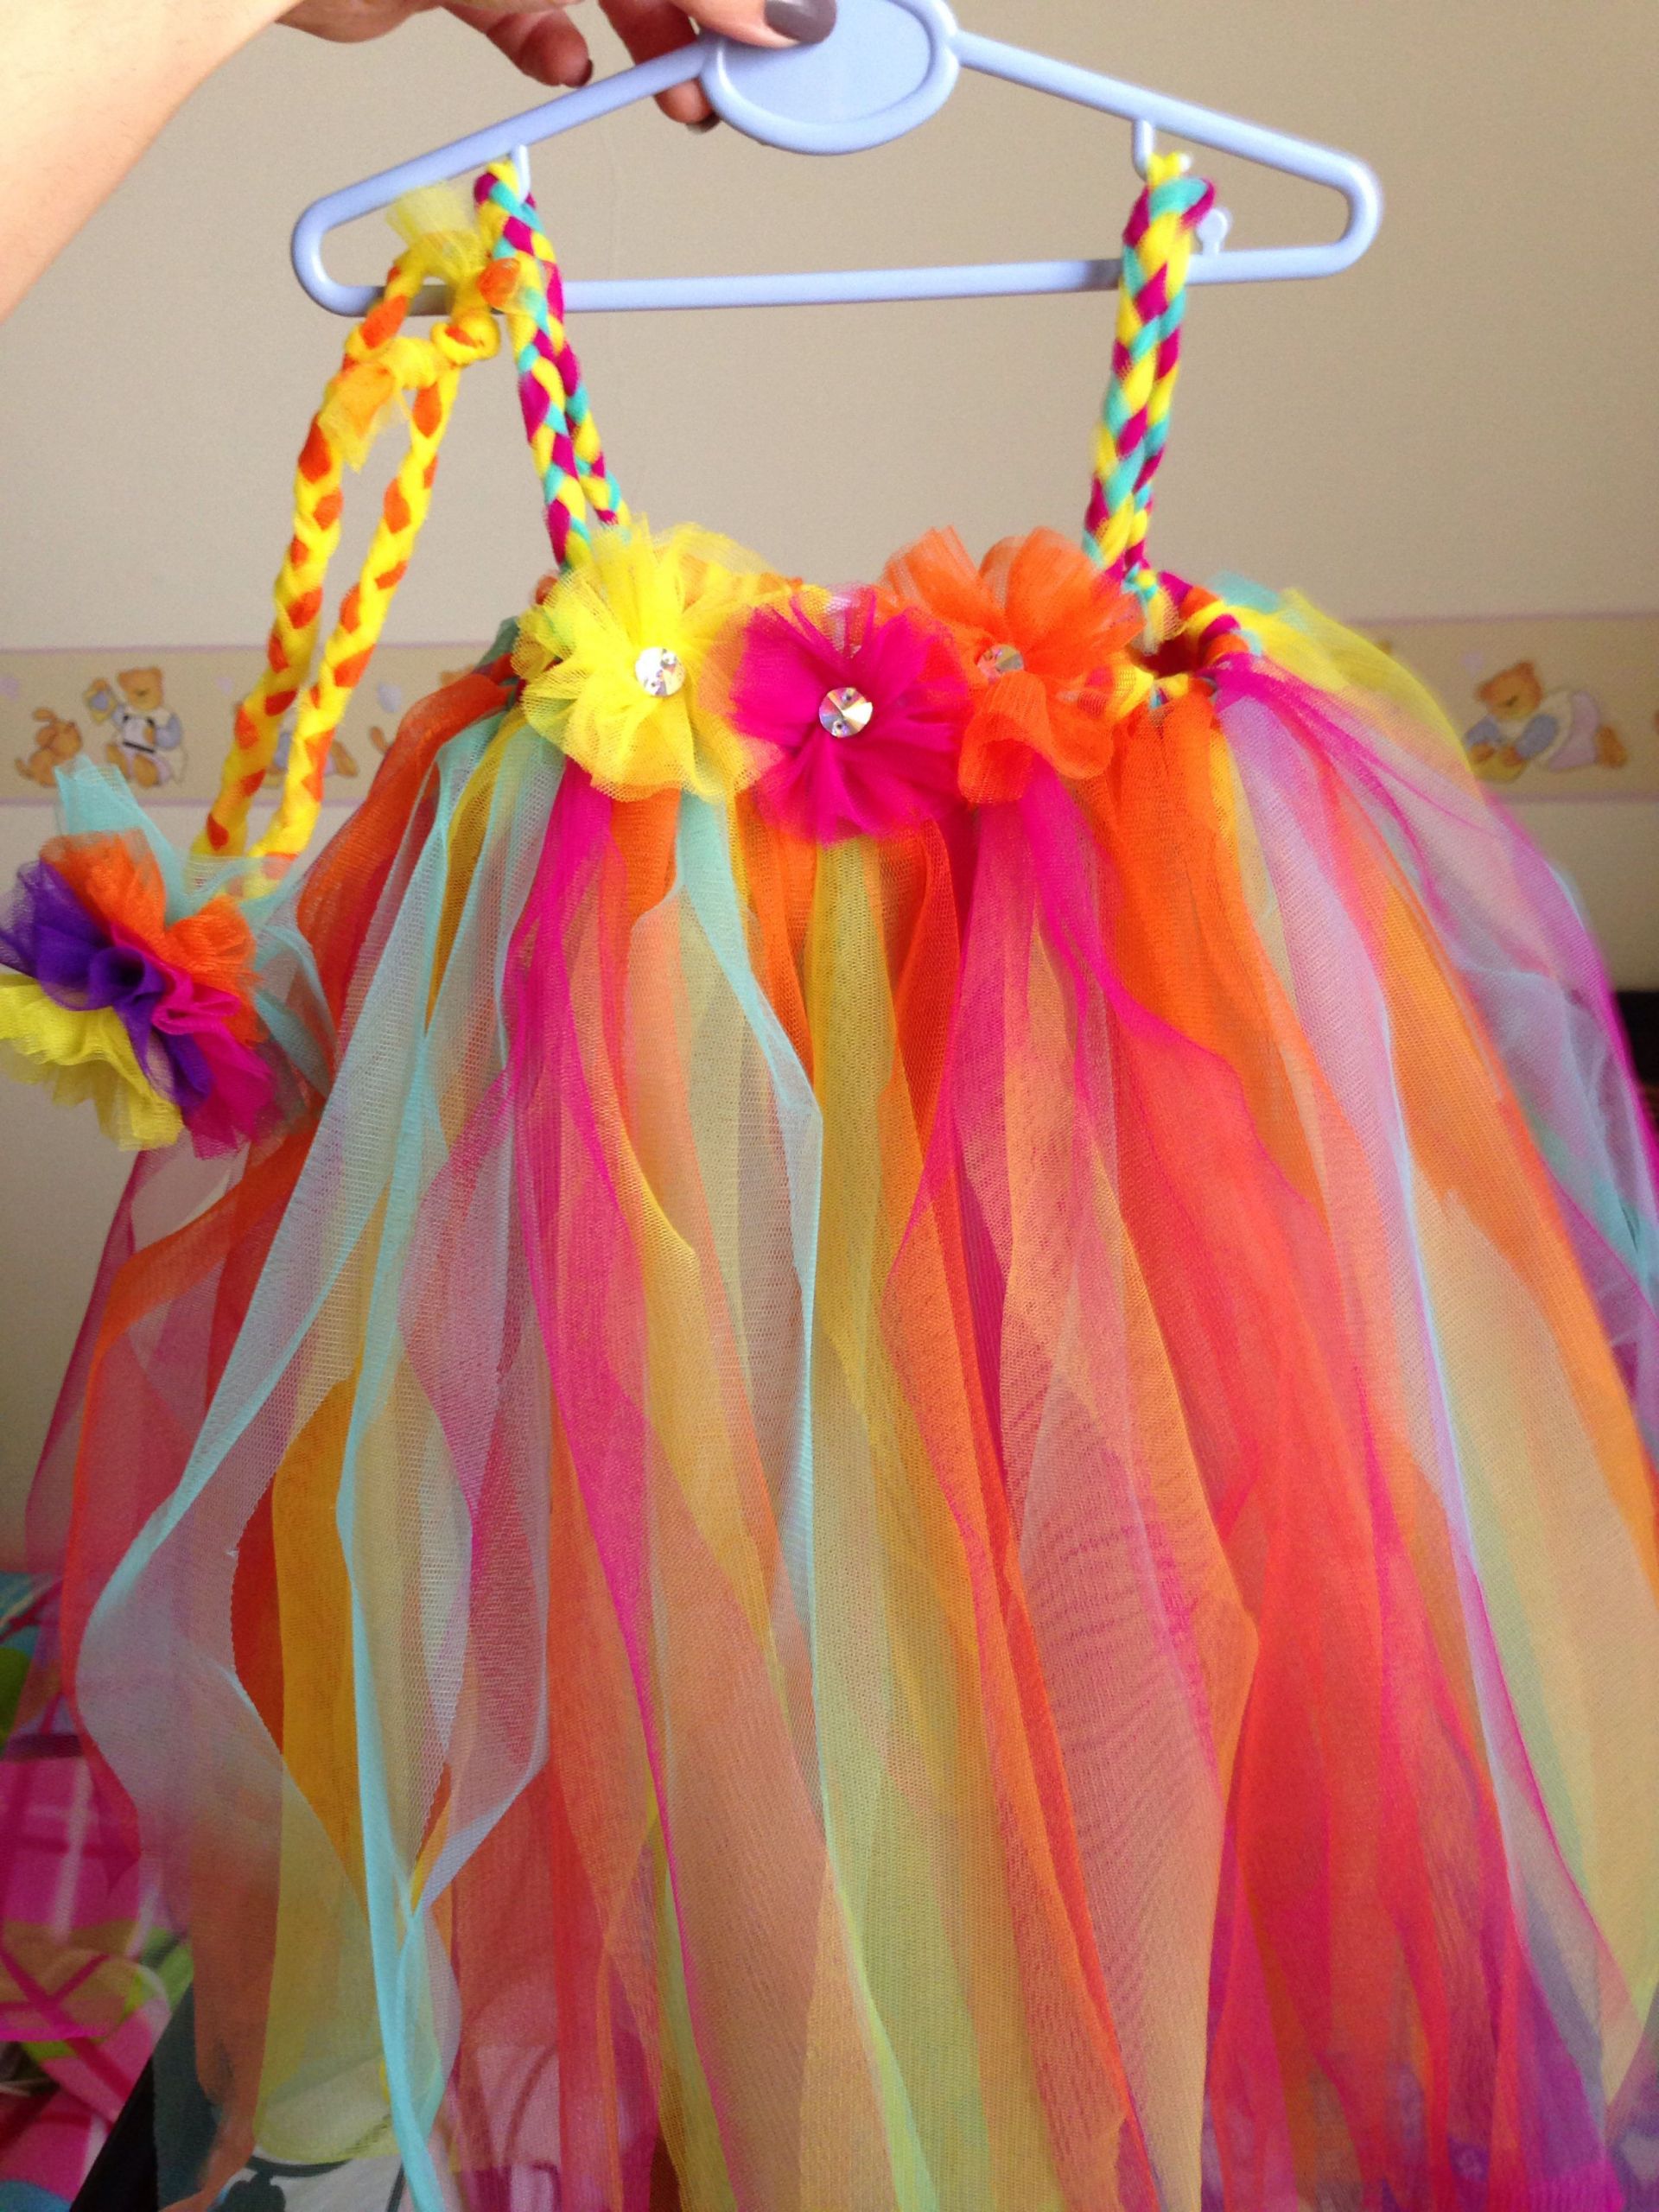 DIY Tutu Dresses For Toddlers
 Diy tutu dress